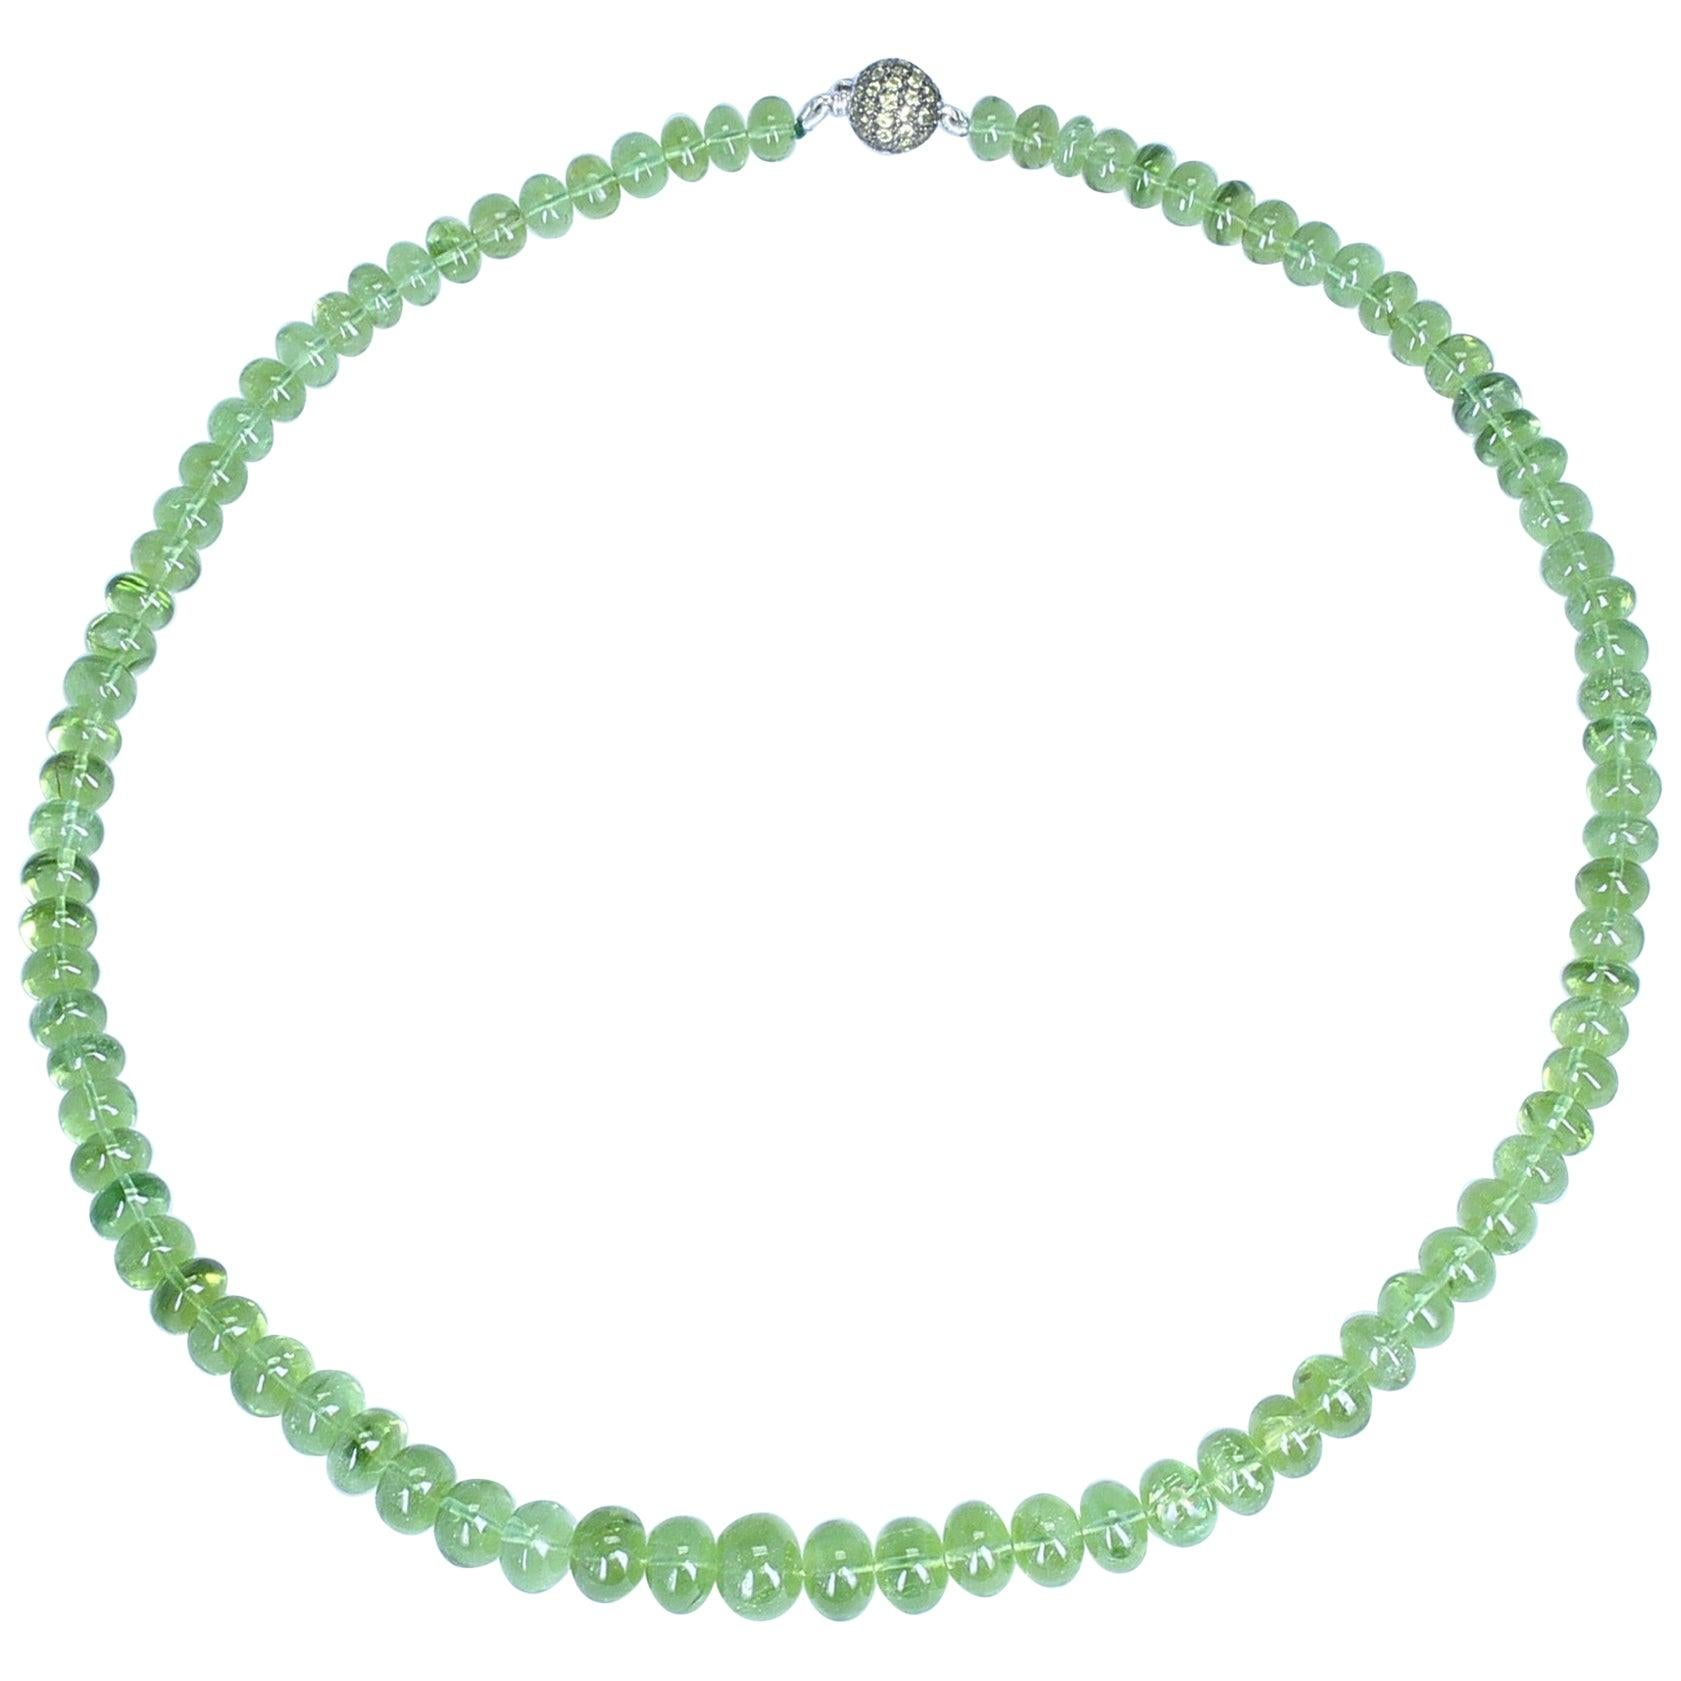 Un collier classique de perles de péridot vertes avec un fermoir en tsavorite serti de pavés, en or blanc 18 carats. Poids : 259.78 cts. Longueur : 18 pouces